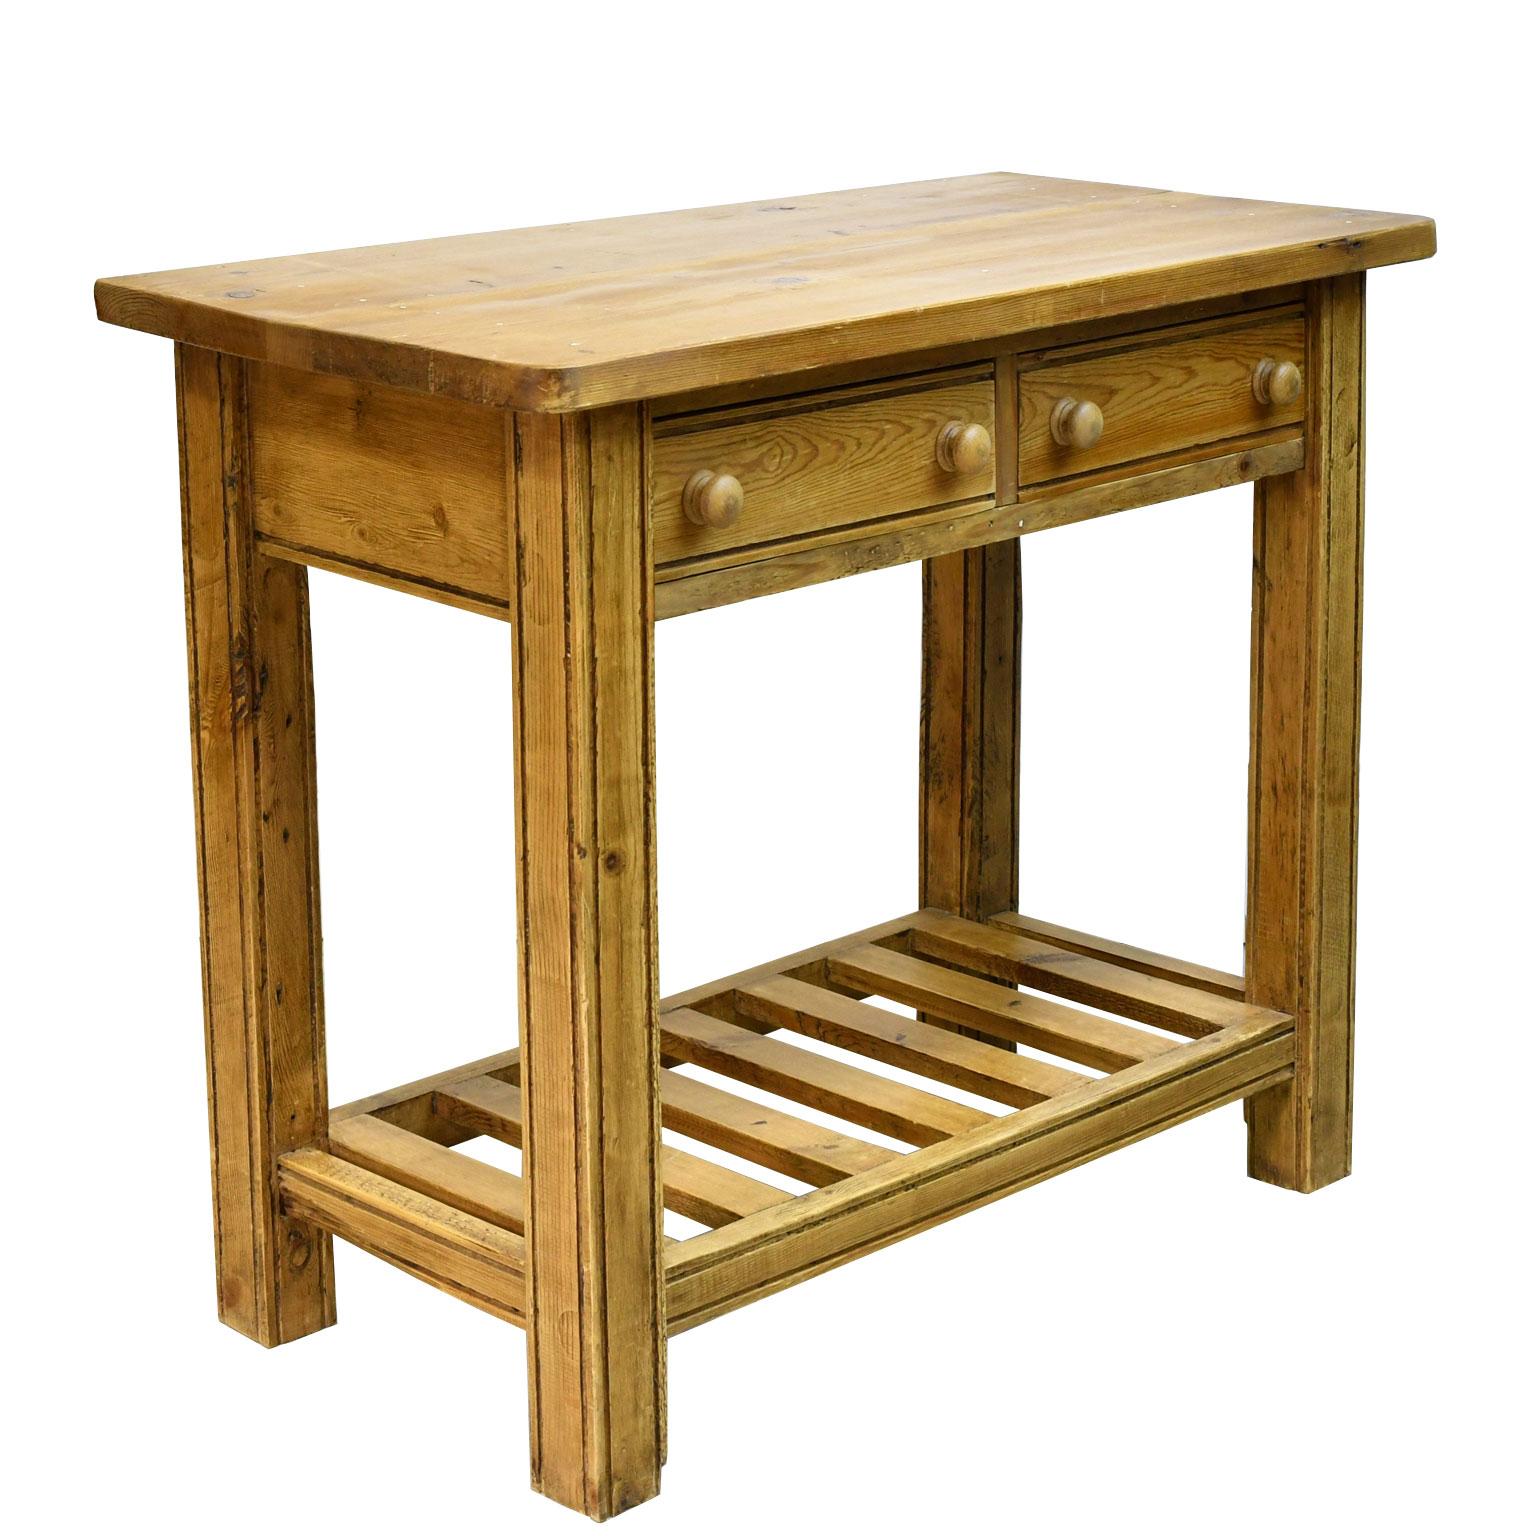 Une table vintage et rustique en pin anglais, fabriquée à partir d'éléments anciens et de bois recyclé, avec des pieds carrés, deux tiroirs avec des boutons tournés et une étagère inférieure. Beaucoup de charme et de caractère !
Dimensions : 37